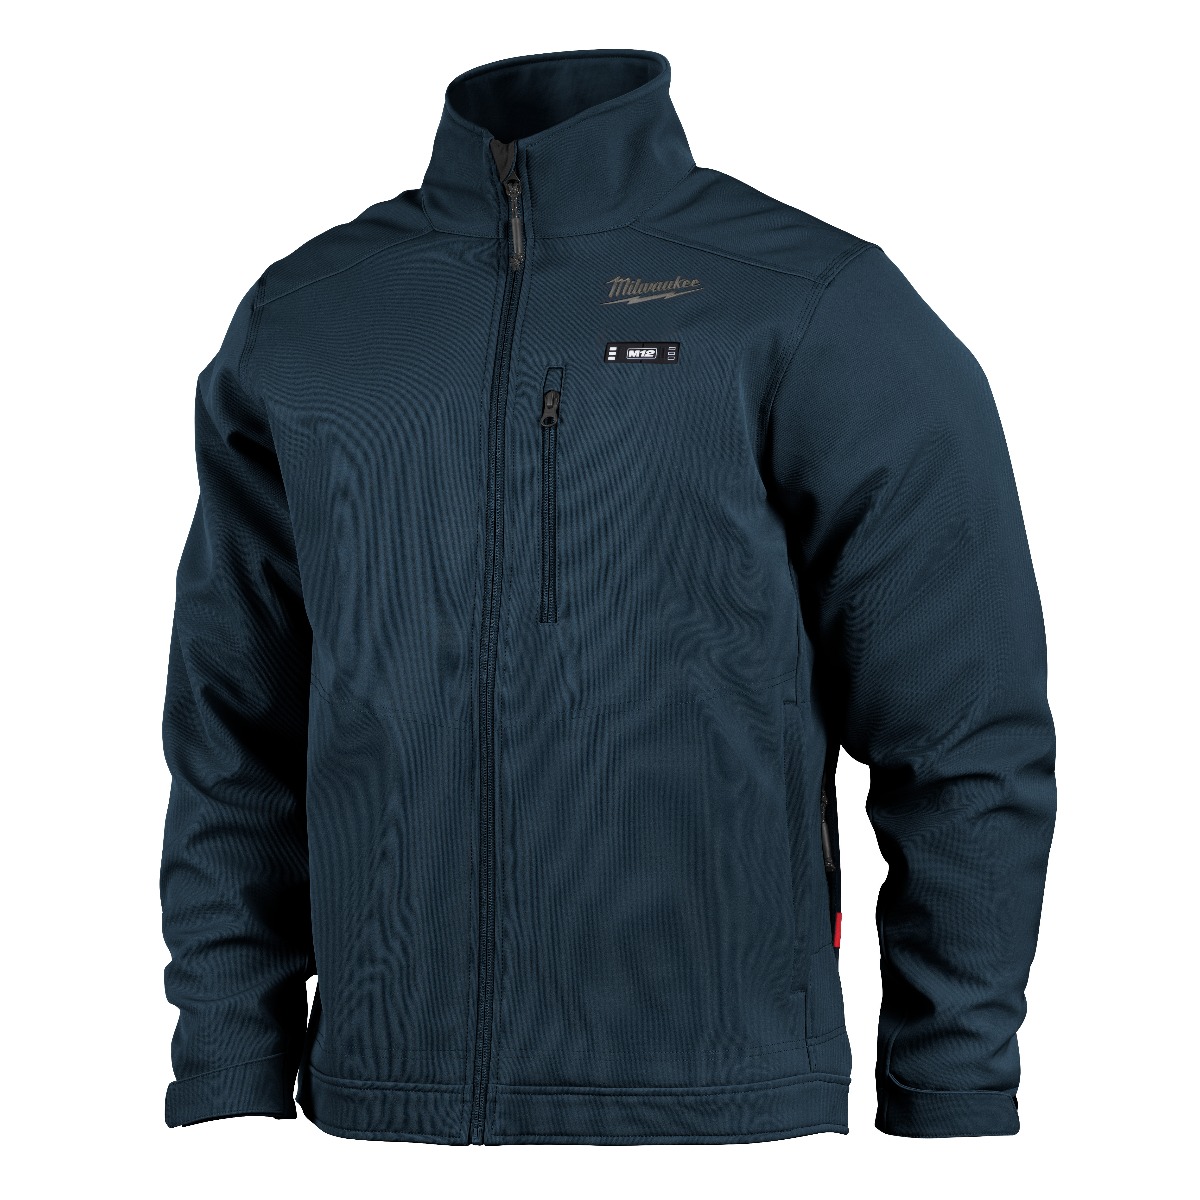 Milwaukee M12™ Heated TOUGHSHELL™ Jacket Kit - BLUE - Medium